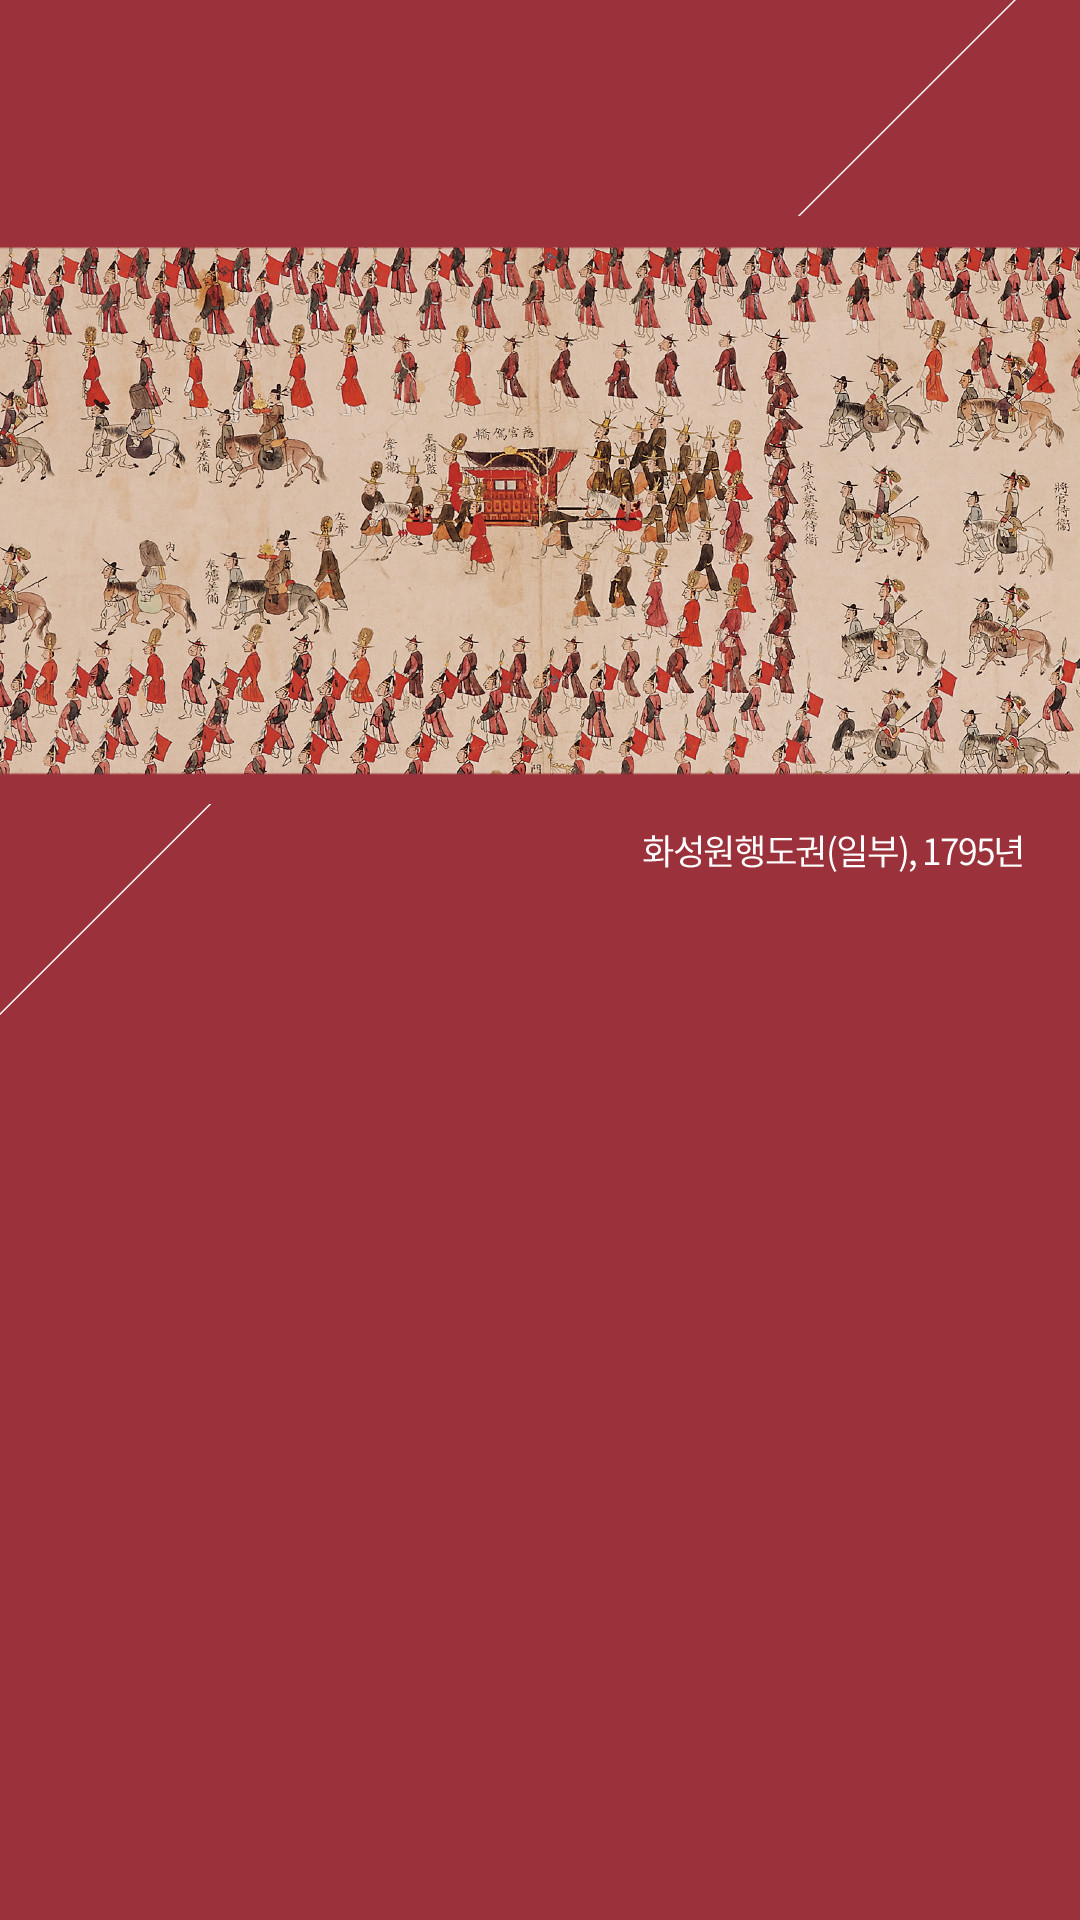 이미지 배경 배경 클리블랜드 박물관의 한국미술품